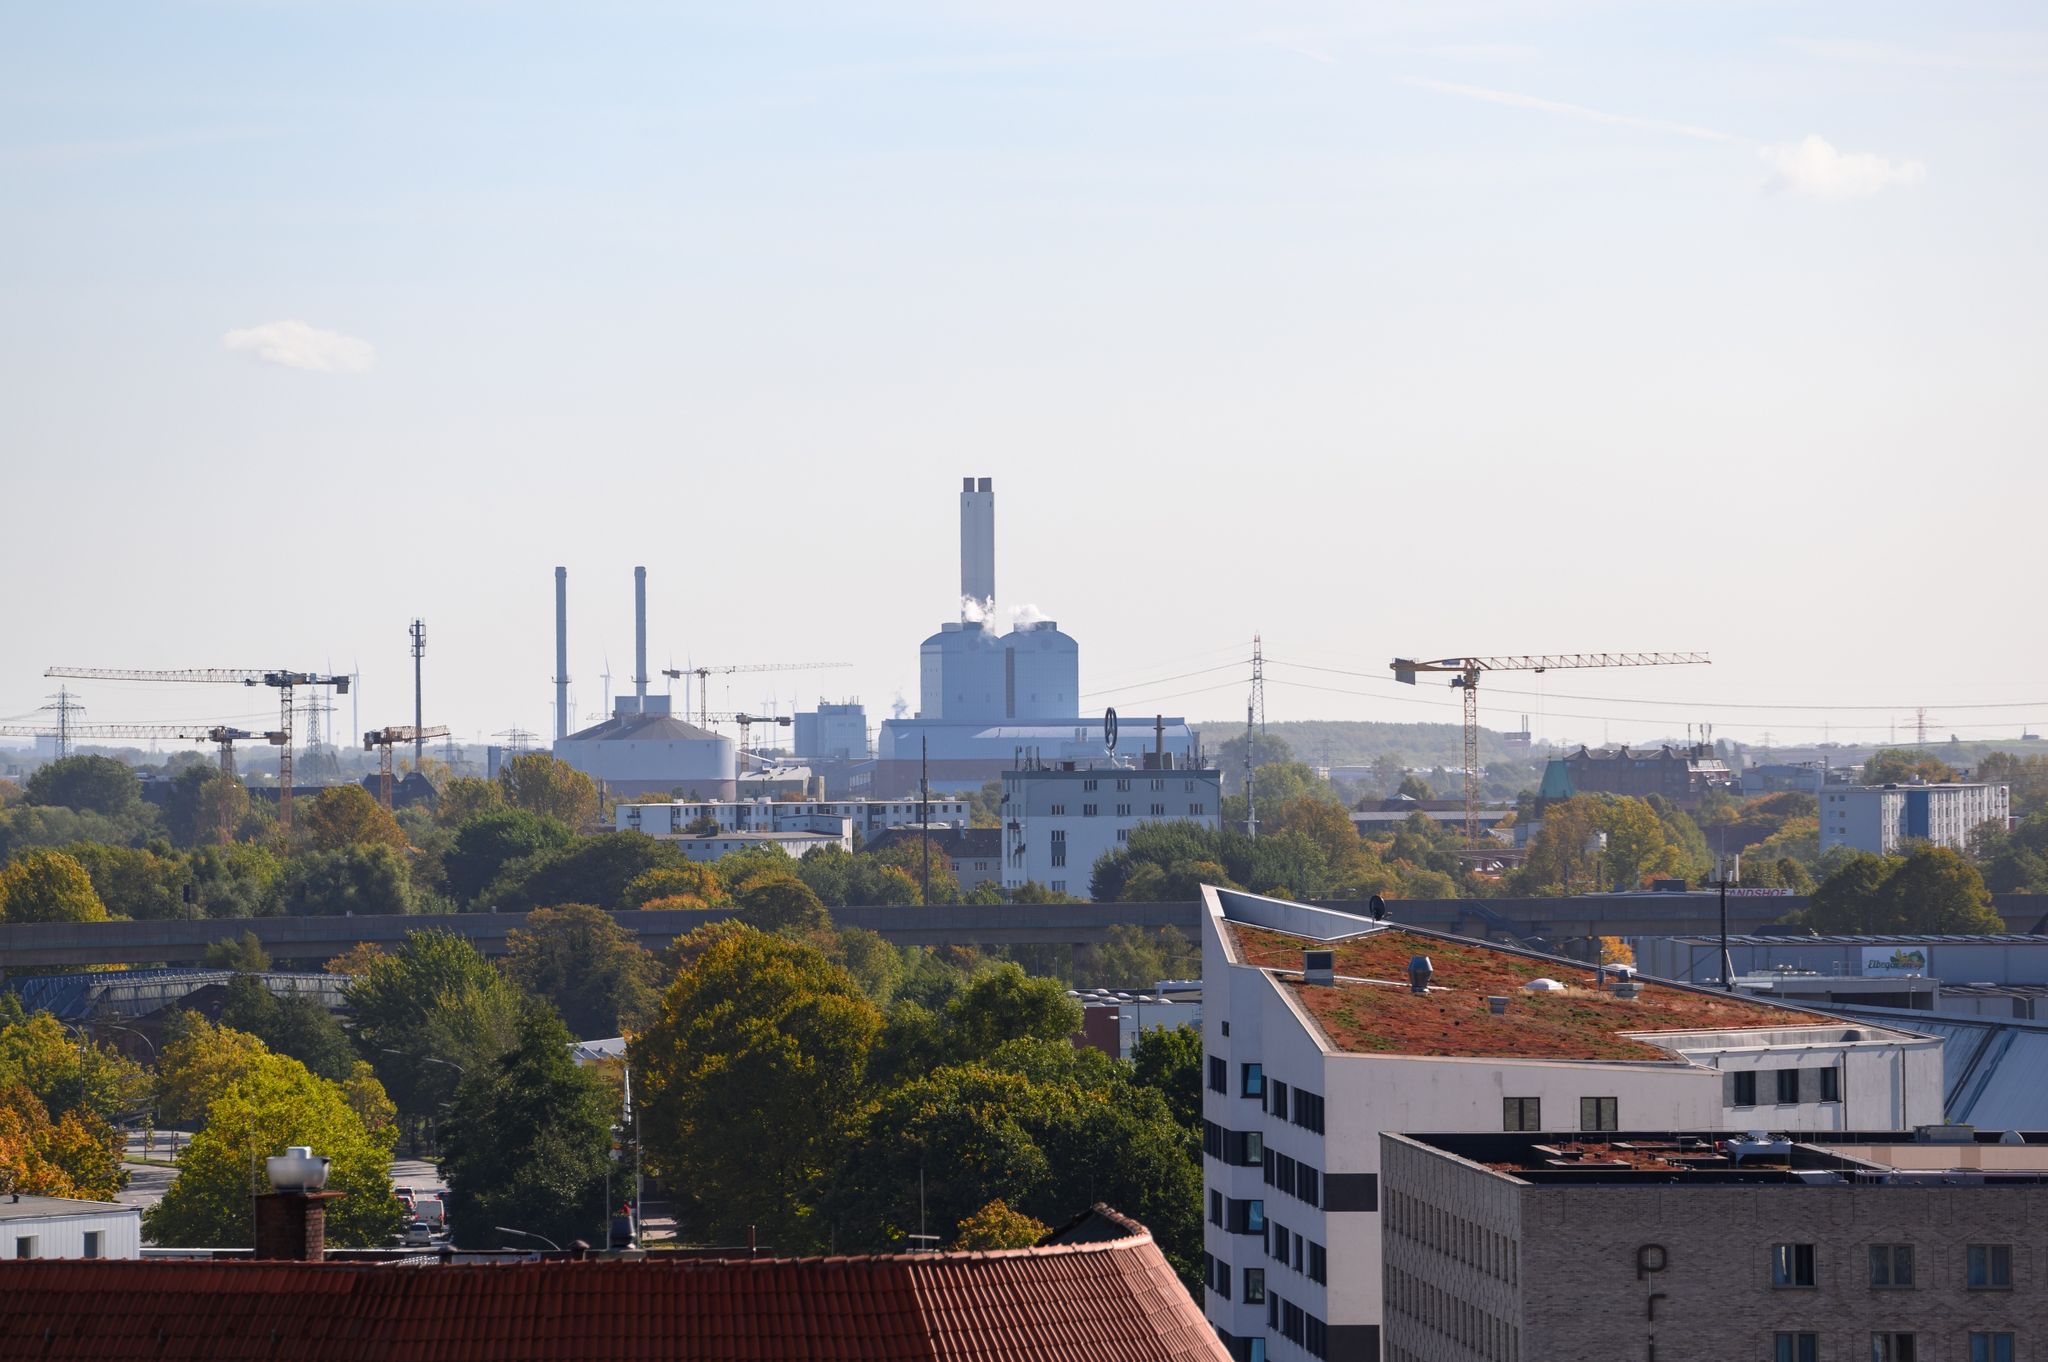 Das Heizkraftwerk Tiefstack von Wärme Hamburg hinter Gebäuden der Stadtteile Hammerbrook und Rothenburgsort.